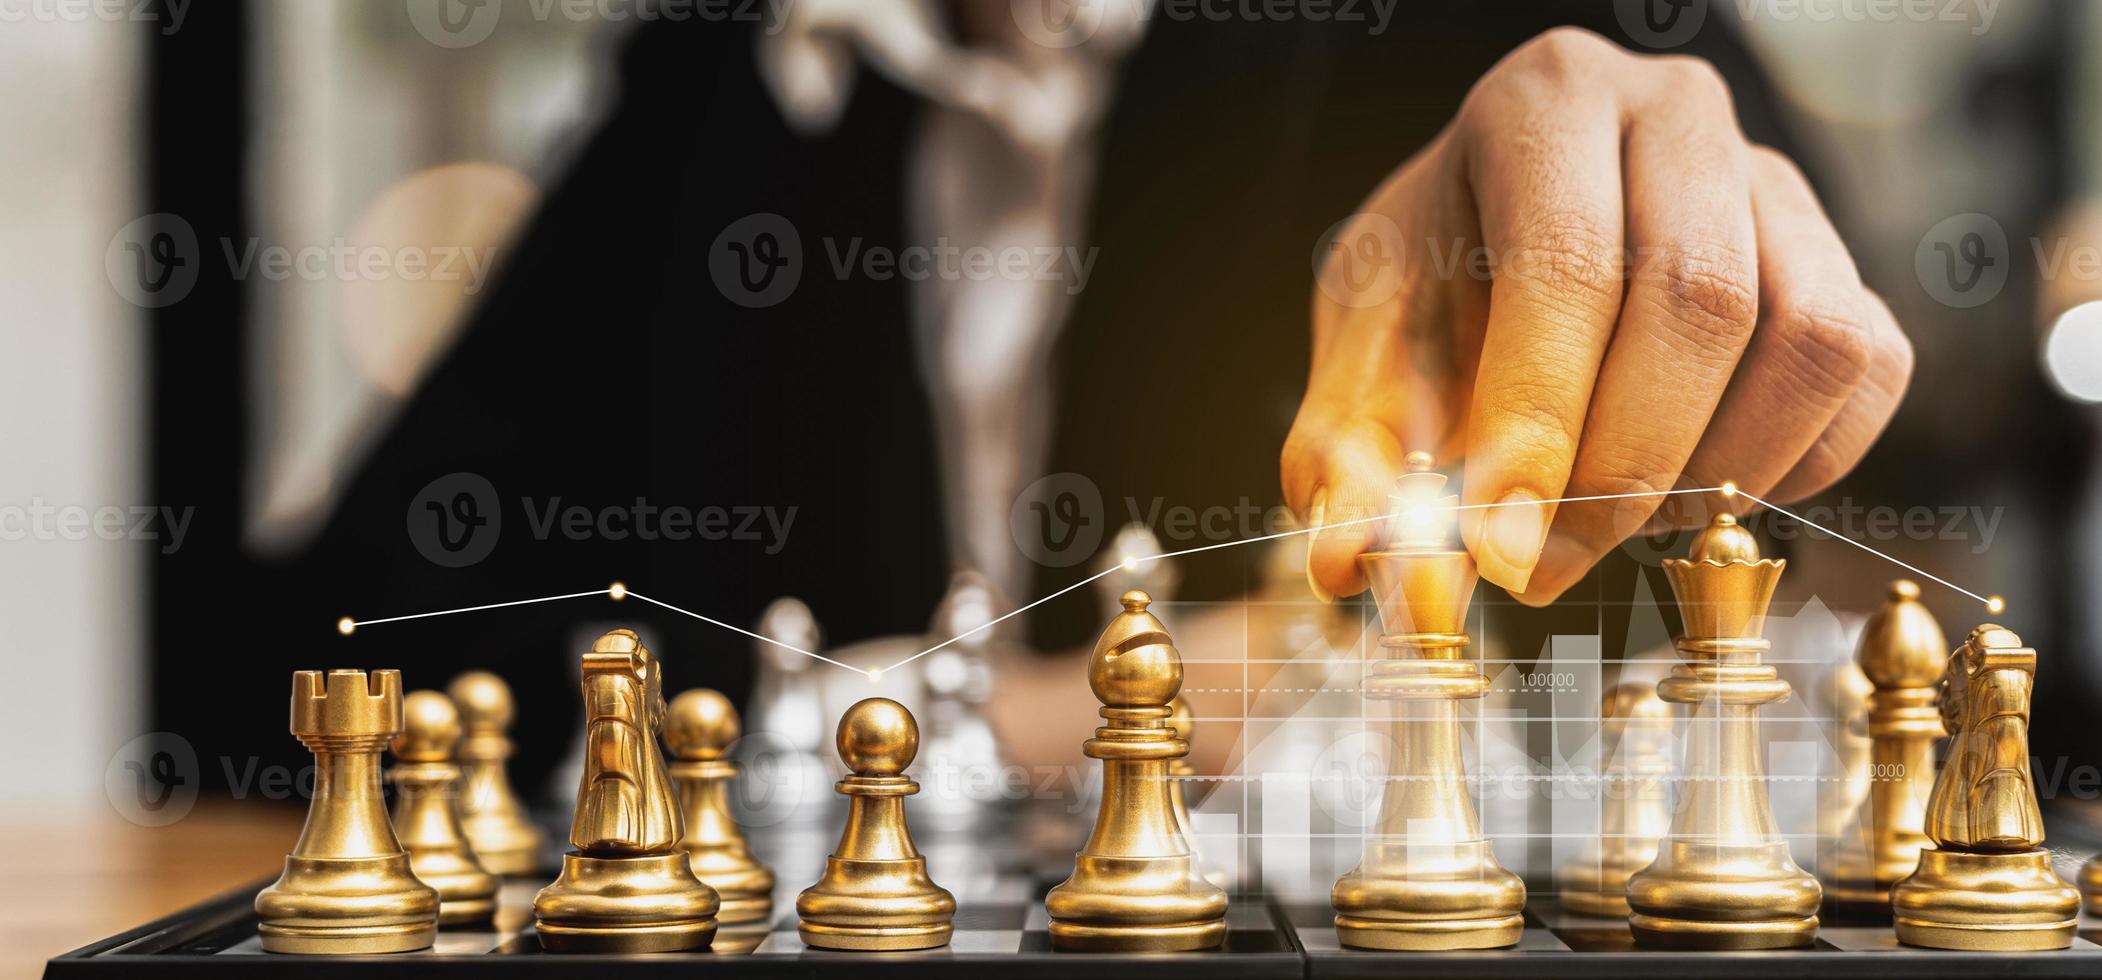 persoon die gouden schaakstukken vasthoudt om een spel te spelen, conceptueel beeld van zakenman die schaakbord speelt in vergelijking met het beheren van een bedrijf op risico, grafiekafbeeldingen die financiële stromen tonen. foto